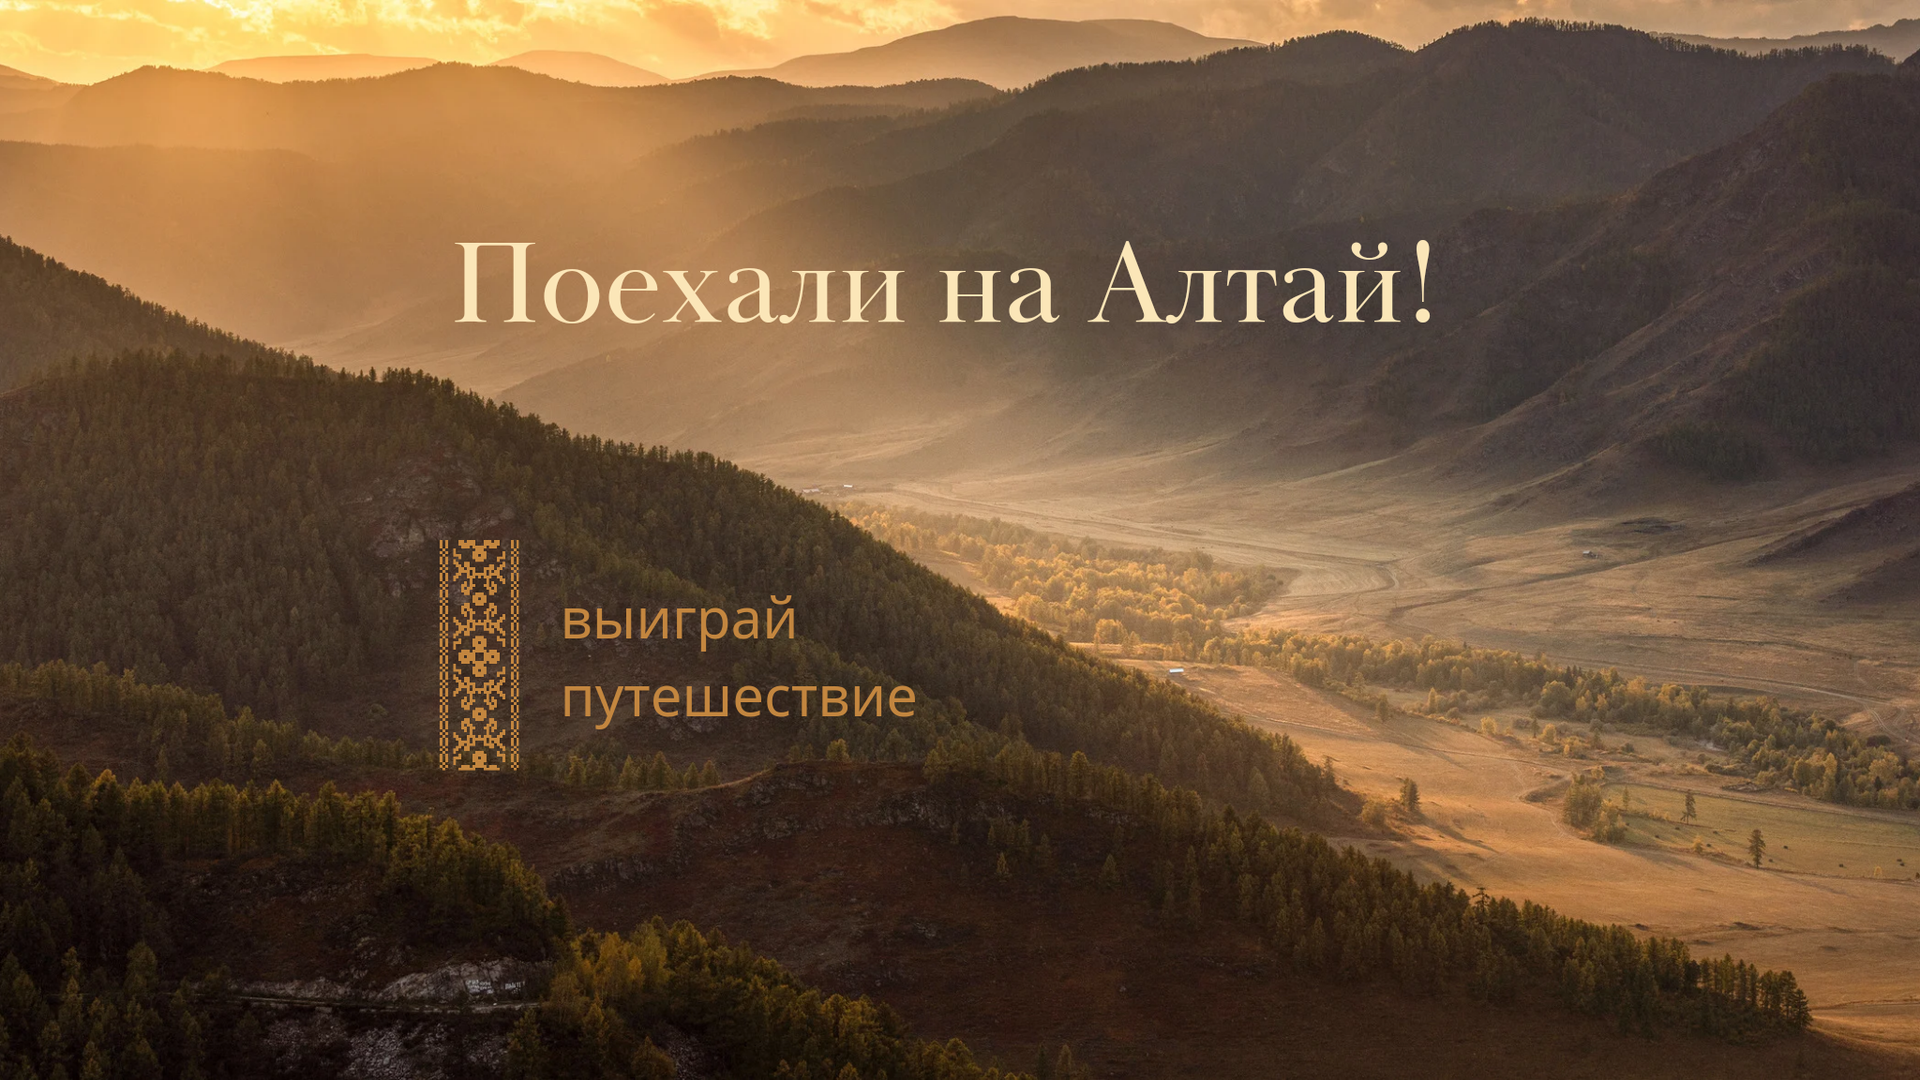 Розыгрыш двух путешествий в Горный Алтай. Новости Trawaoil